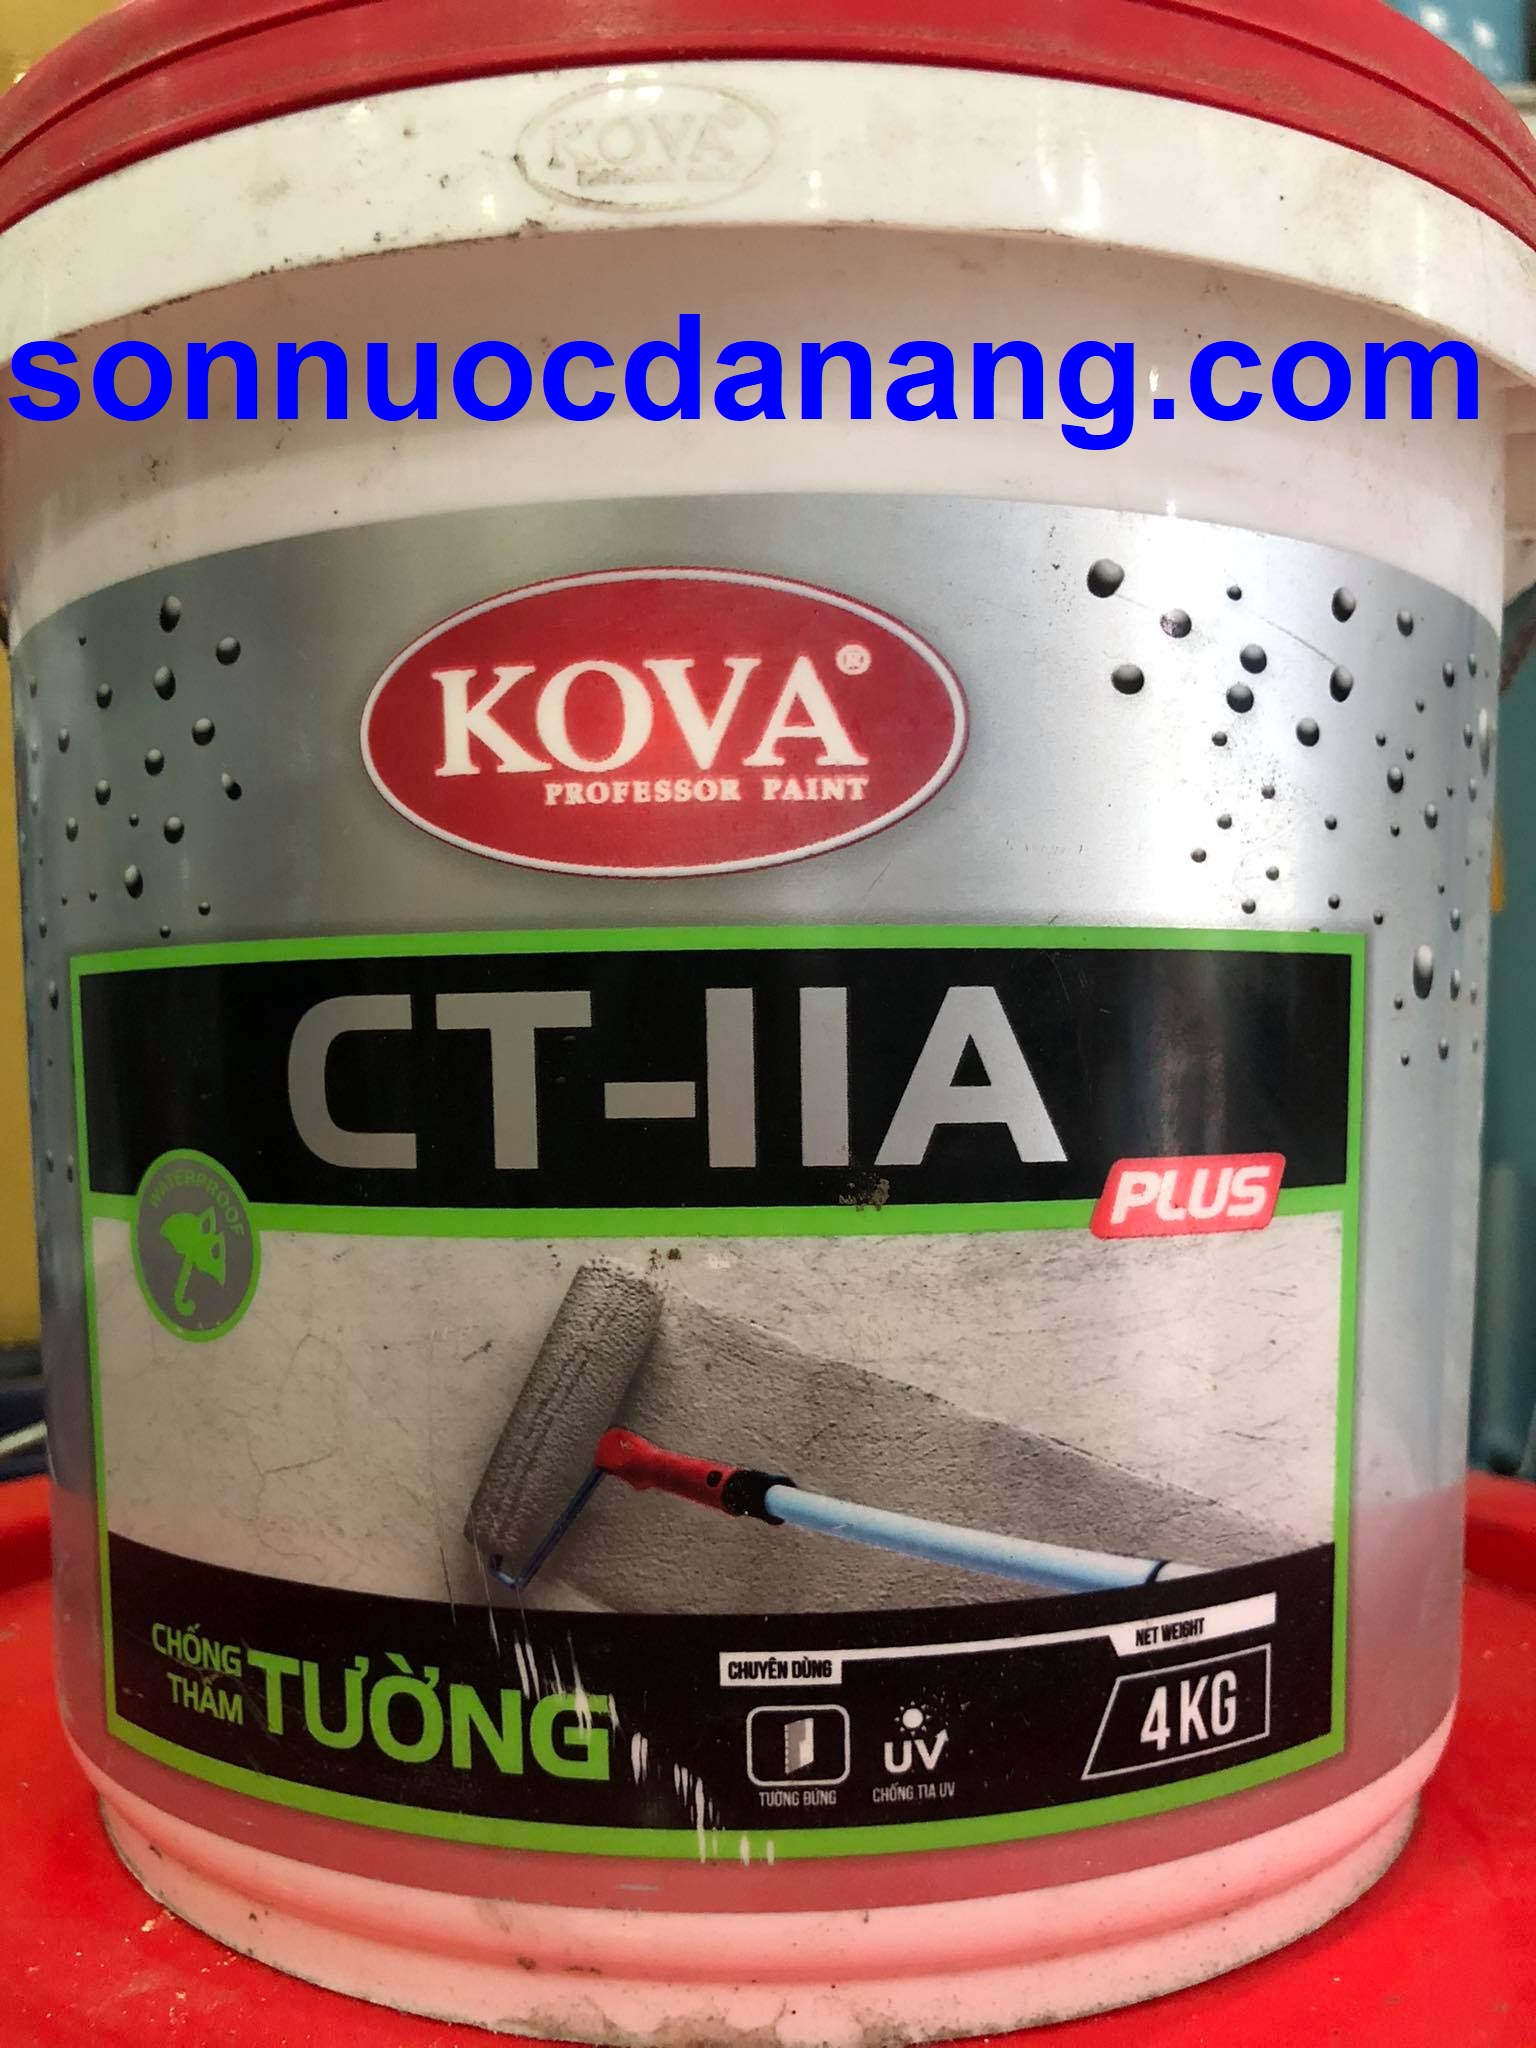 Sơn KOVA CT11A Plus là sản phẩm sơn nội thất cao cấp của KOVA. Với công thức đặc biệt và màu sắc đa dạng, sơn CT11A Plus sẽ mang đến cho ngôi nhà của bạn một vẻ đẹp trang nhã và đầy phong cách.